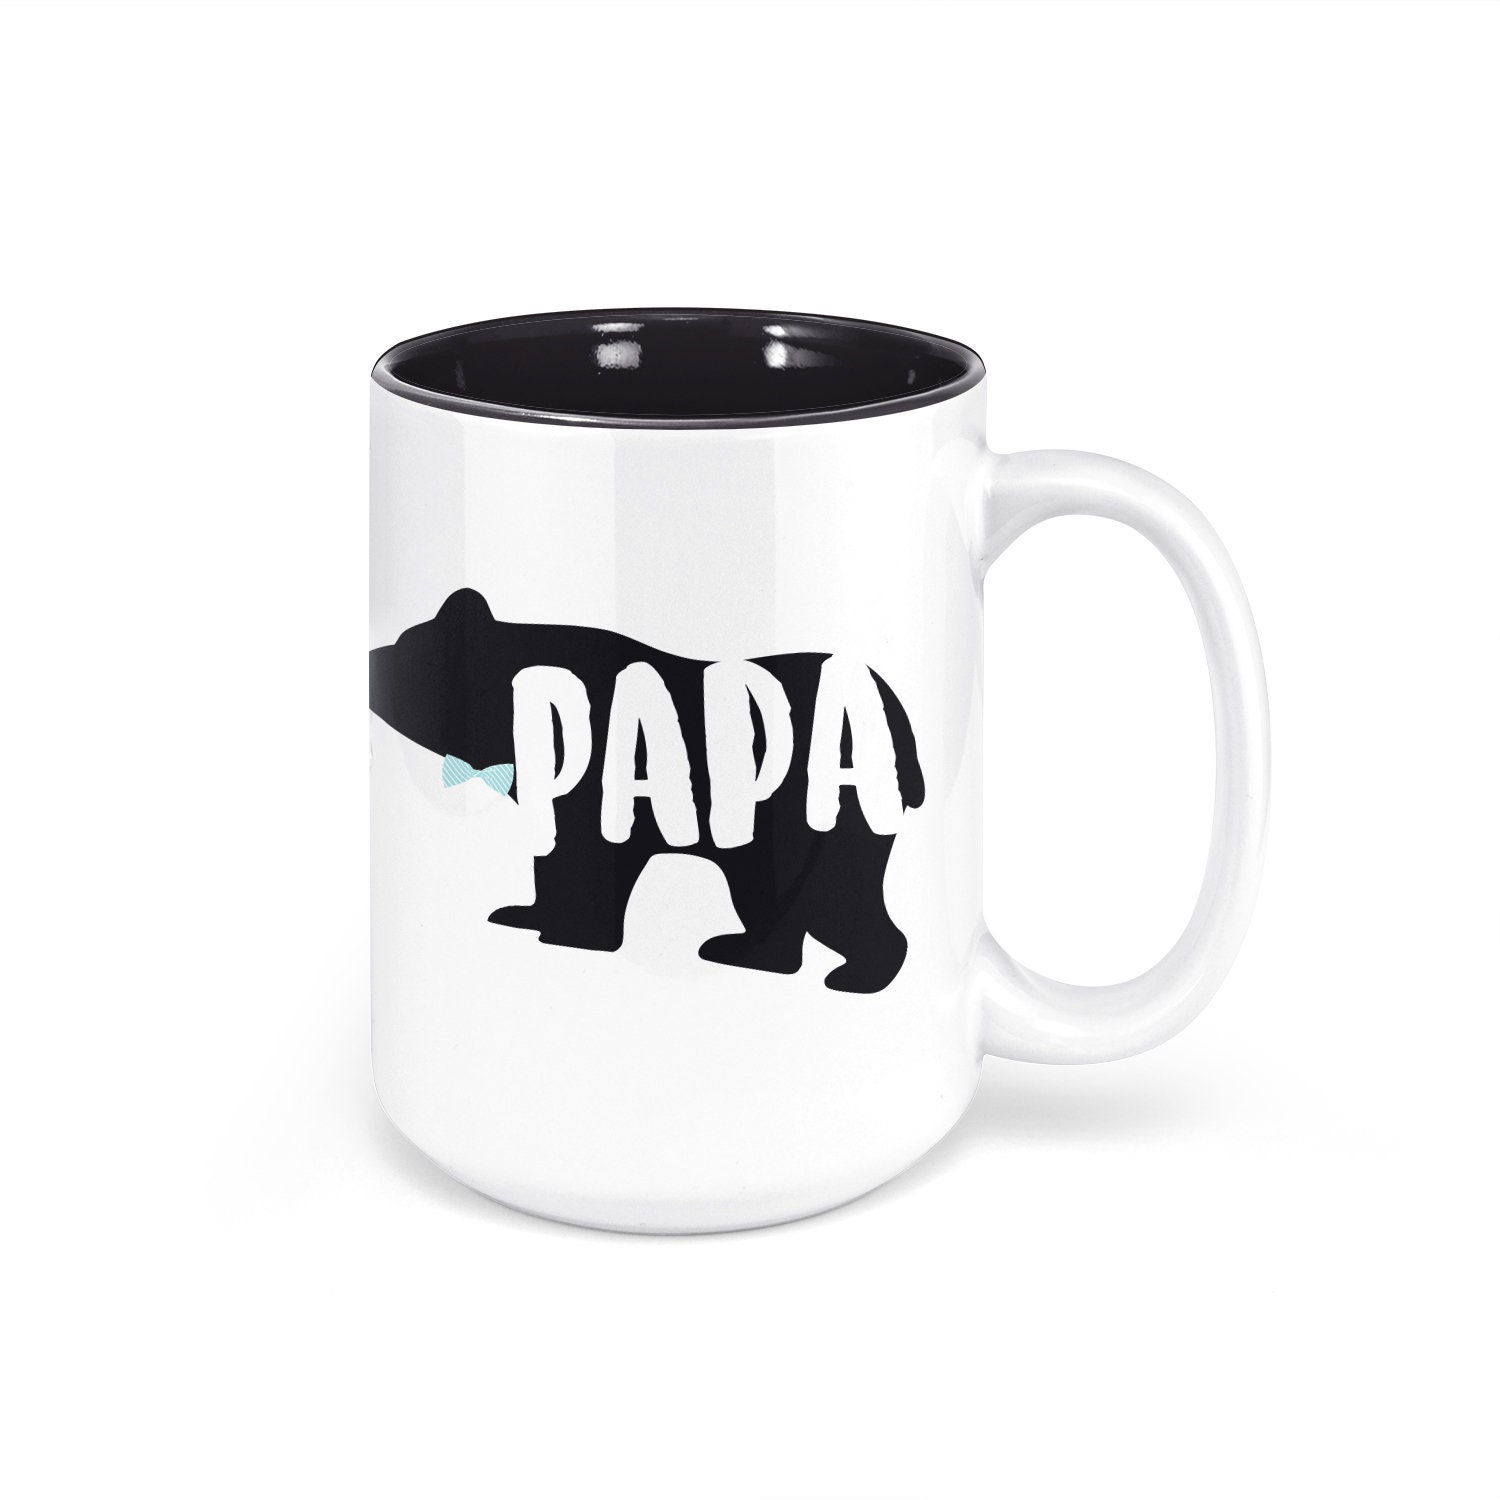 Papa Bear 2018 Mug Mama Bear 2018 Mug Set 11oz 15oz novelty